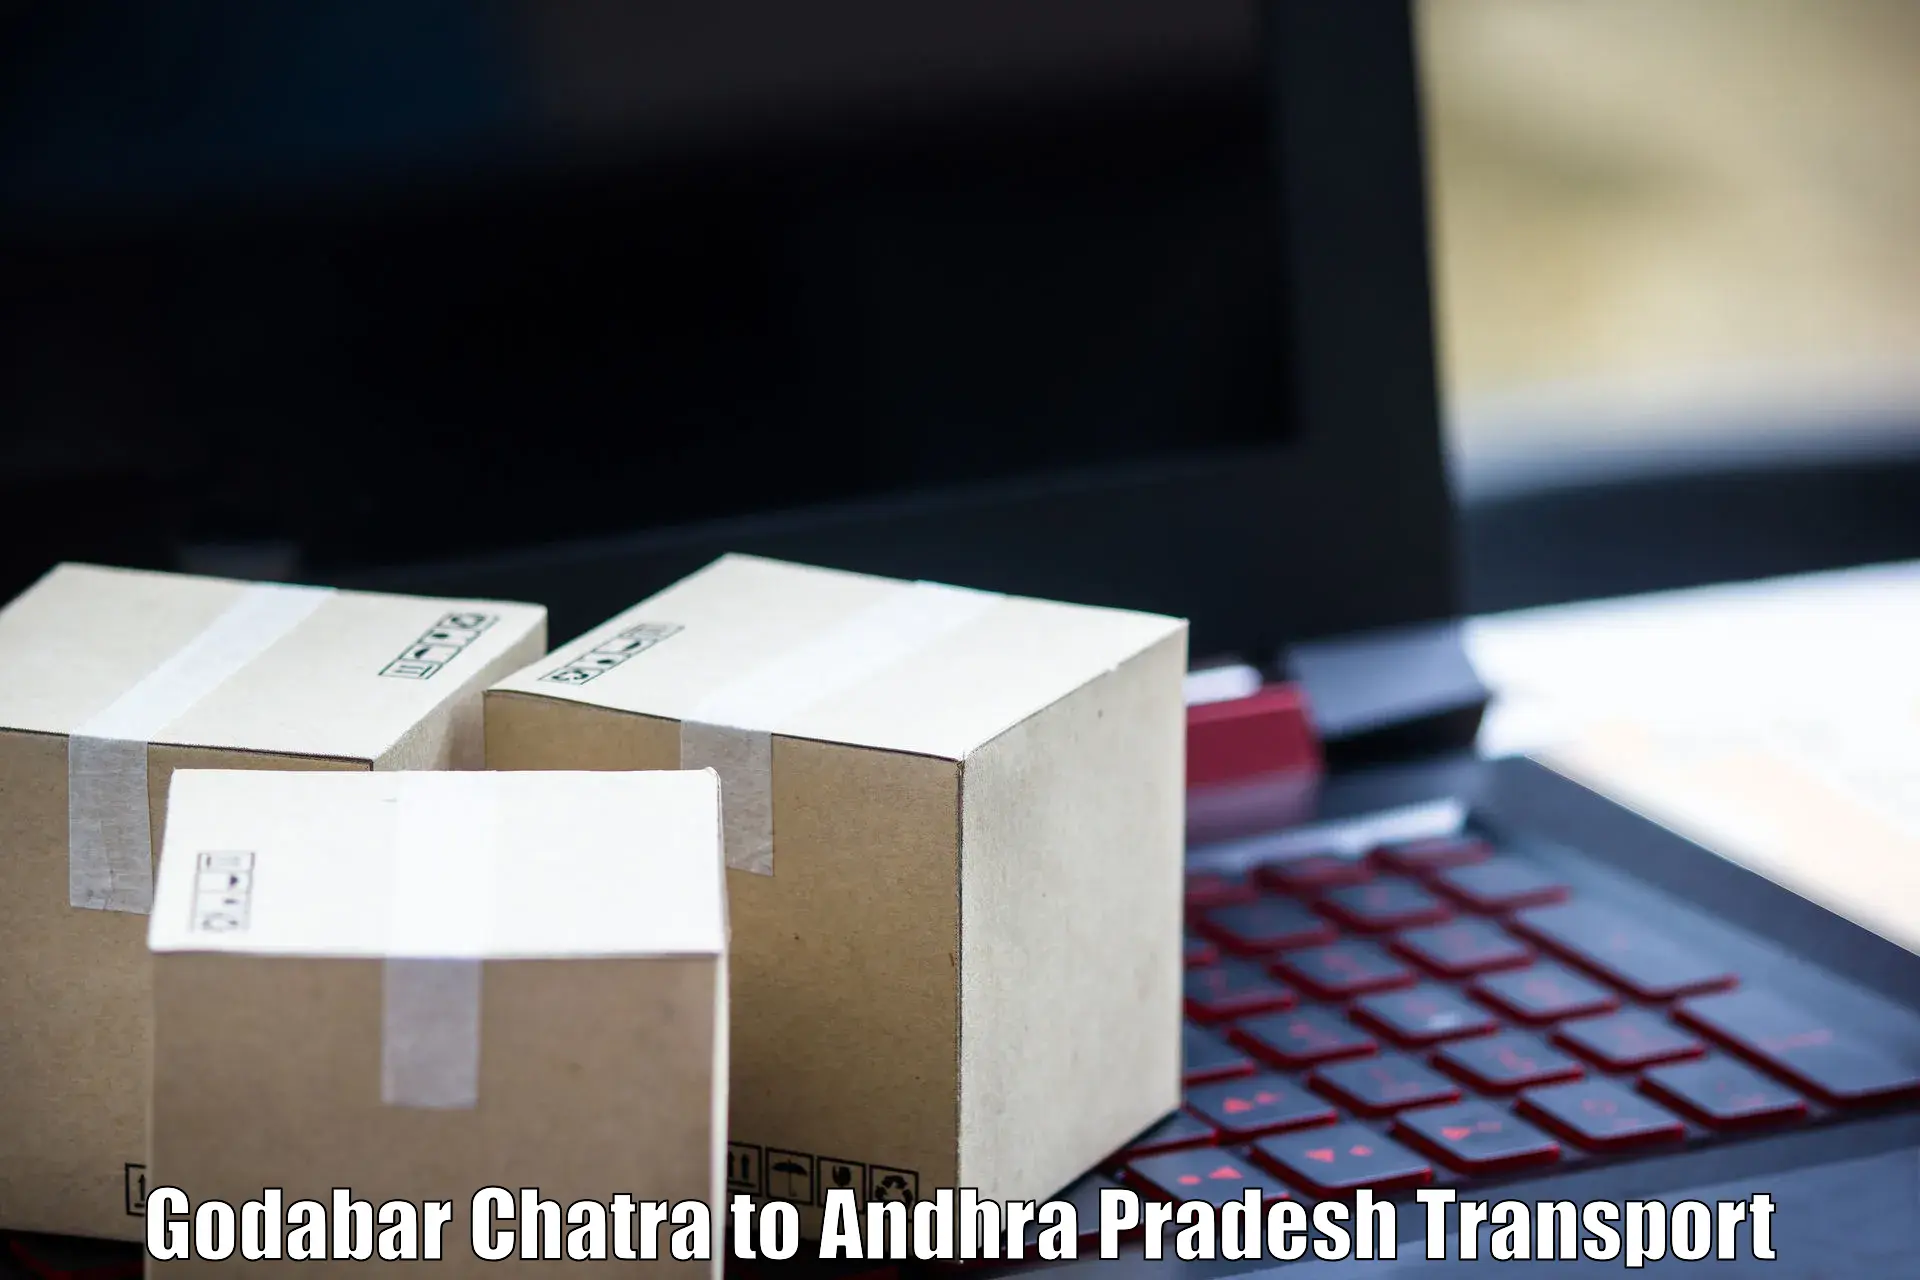 Air cargo transport services Godabar Chatra to Pedapadu